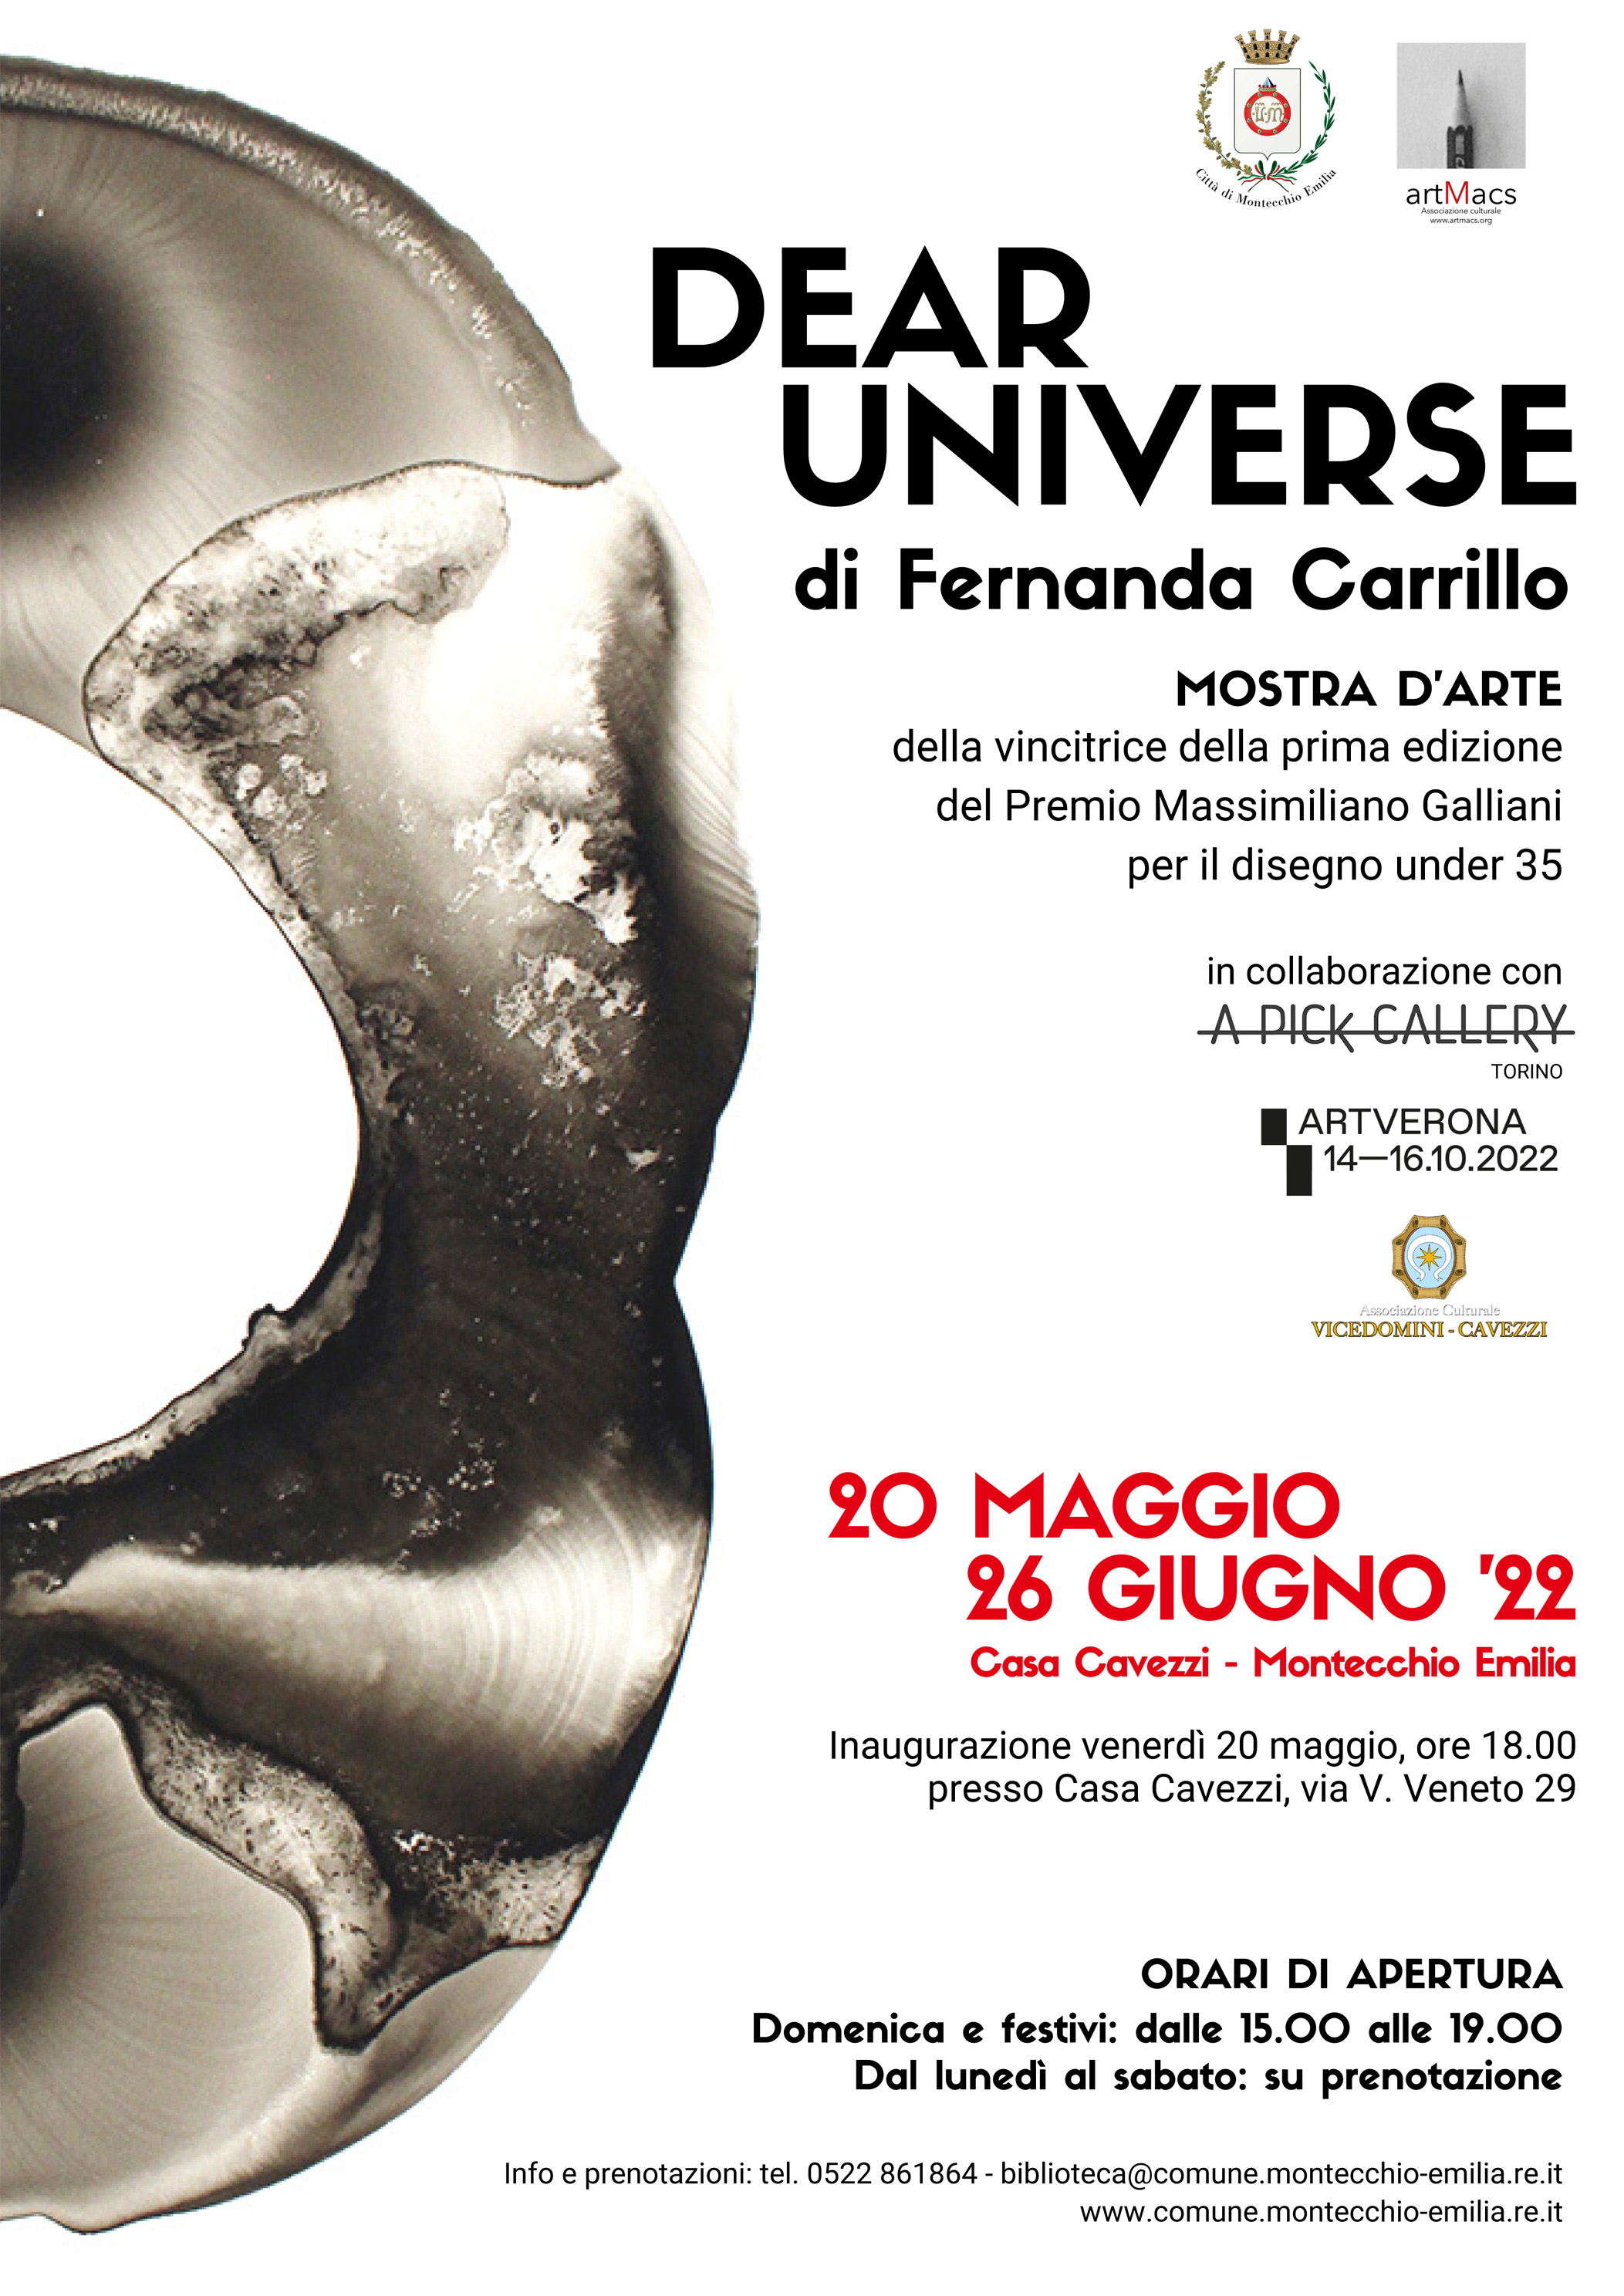 DEAR UNIVERSE. A casa Cavezzi una mostra di Fernanda Carrillo, vincitrice della prima edizione del “Premio Massimiliano Galliani per il disegno under 35”